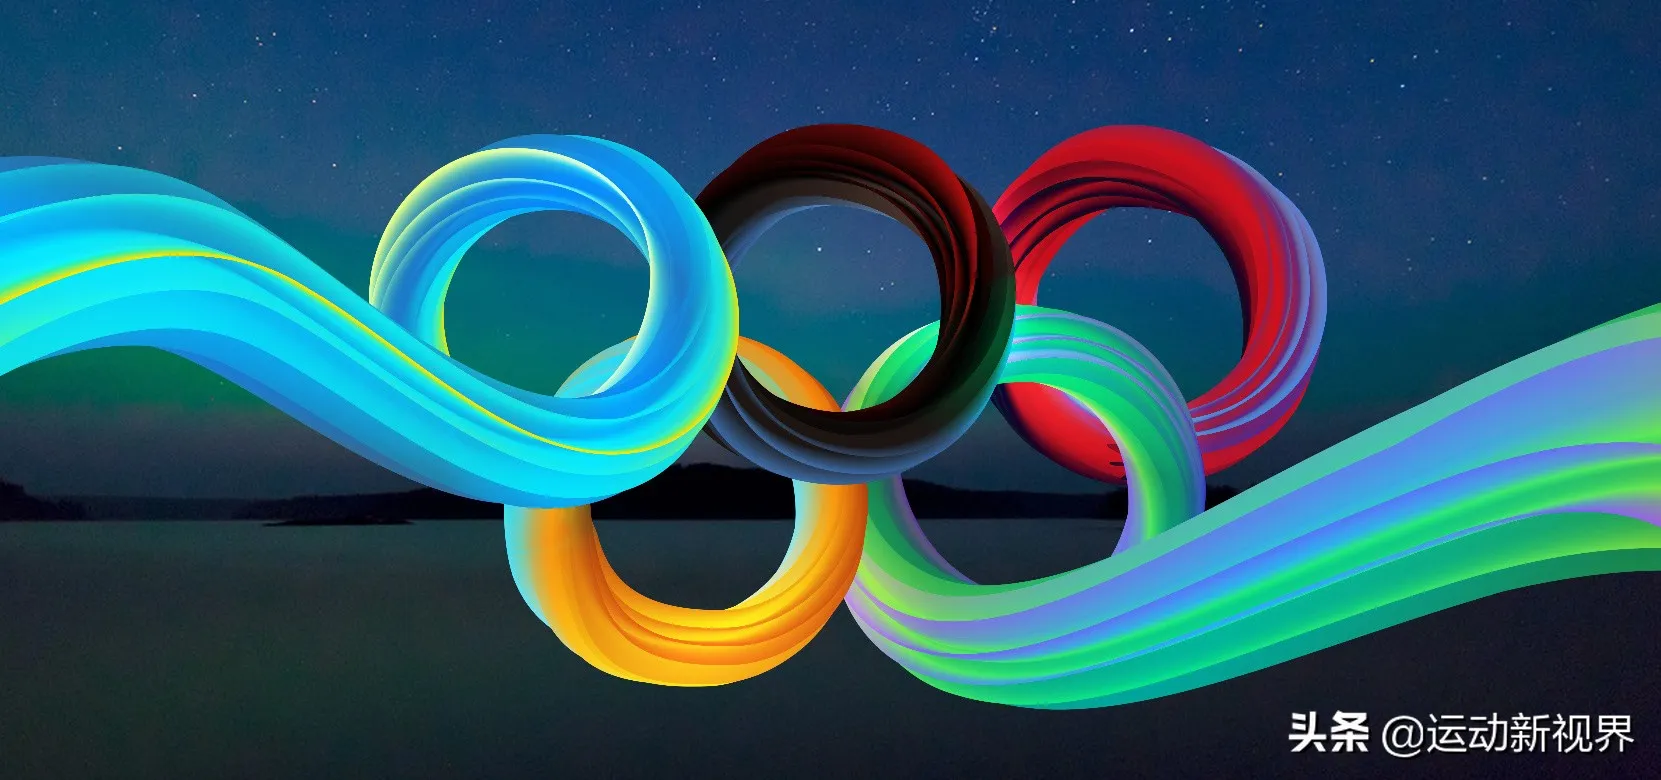 奥运五环的颜色及寓意 | 奥运五环